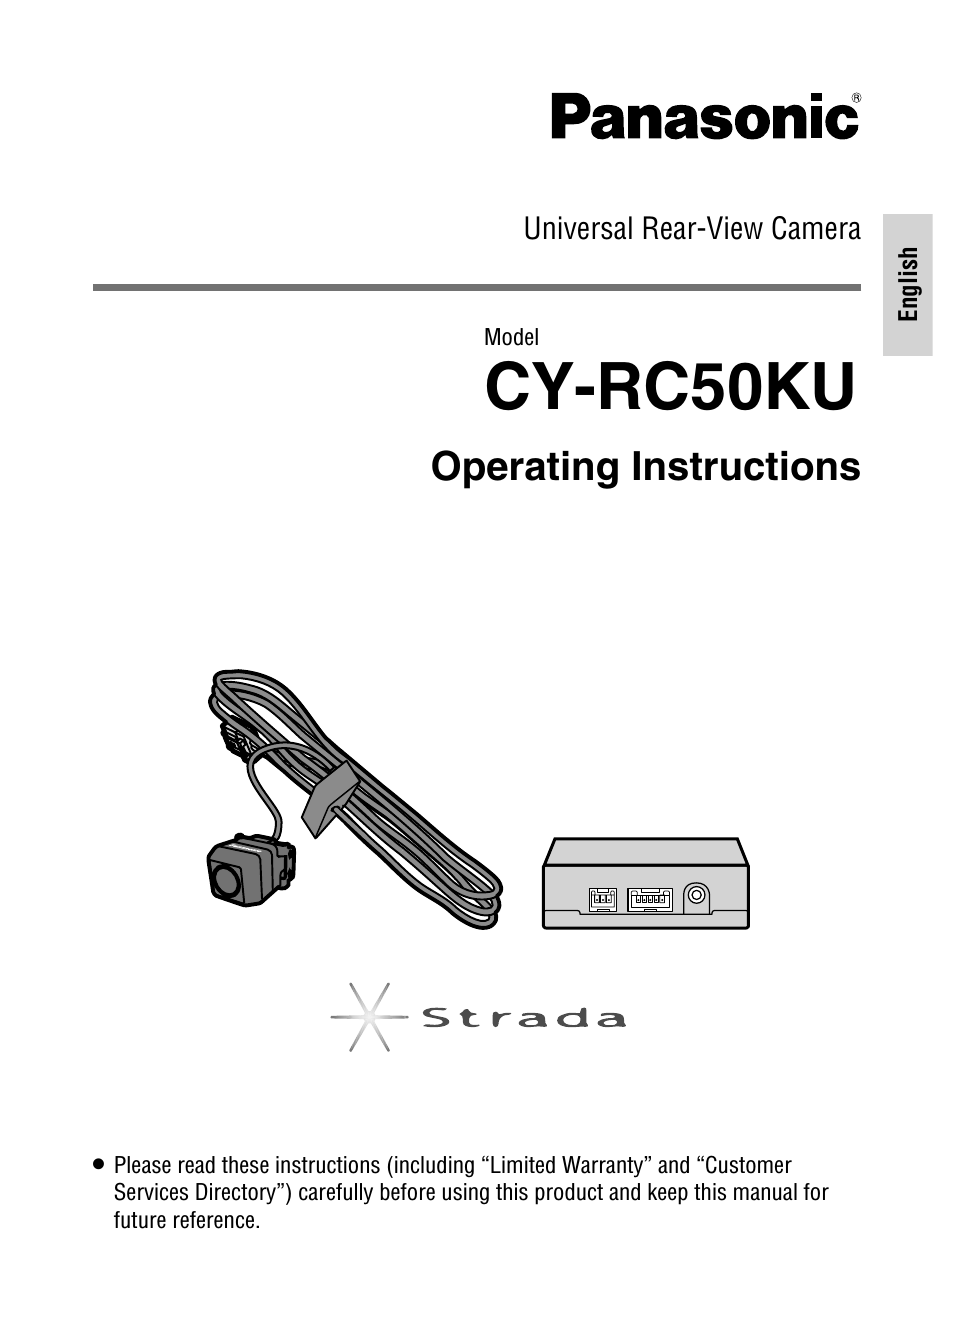 CY-RC50KU